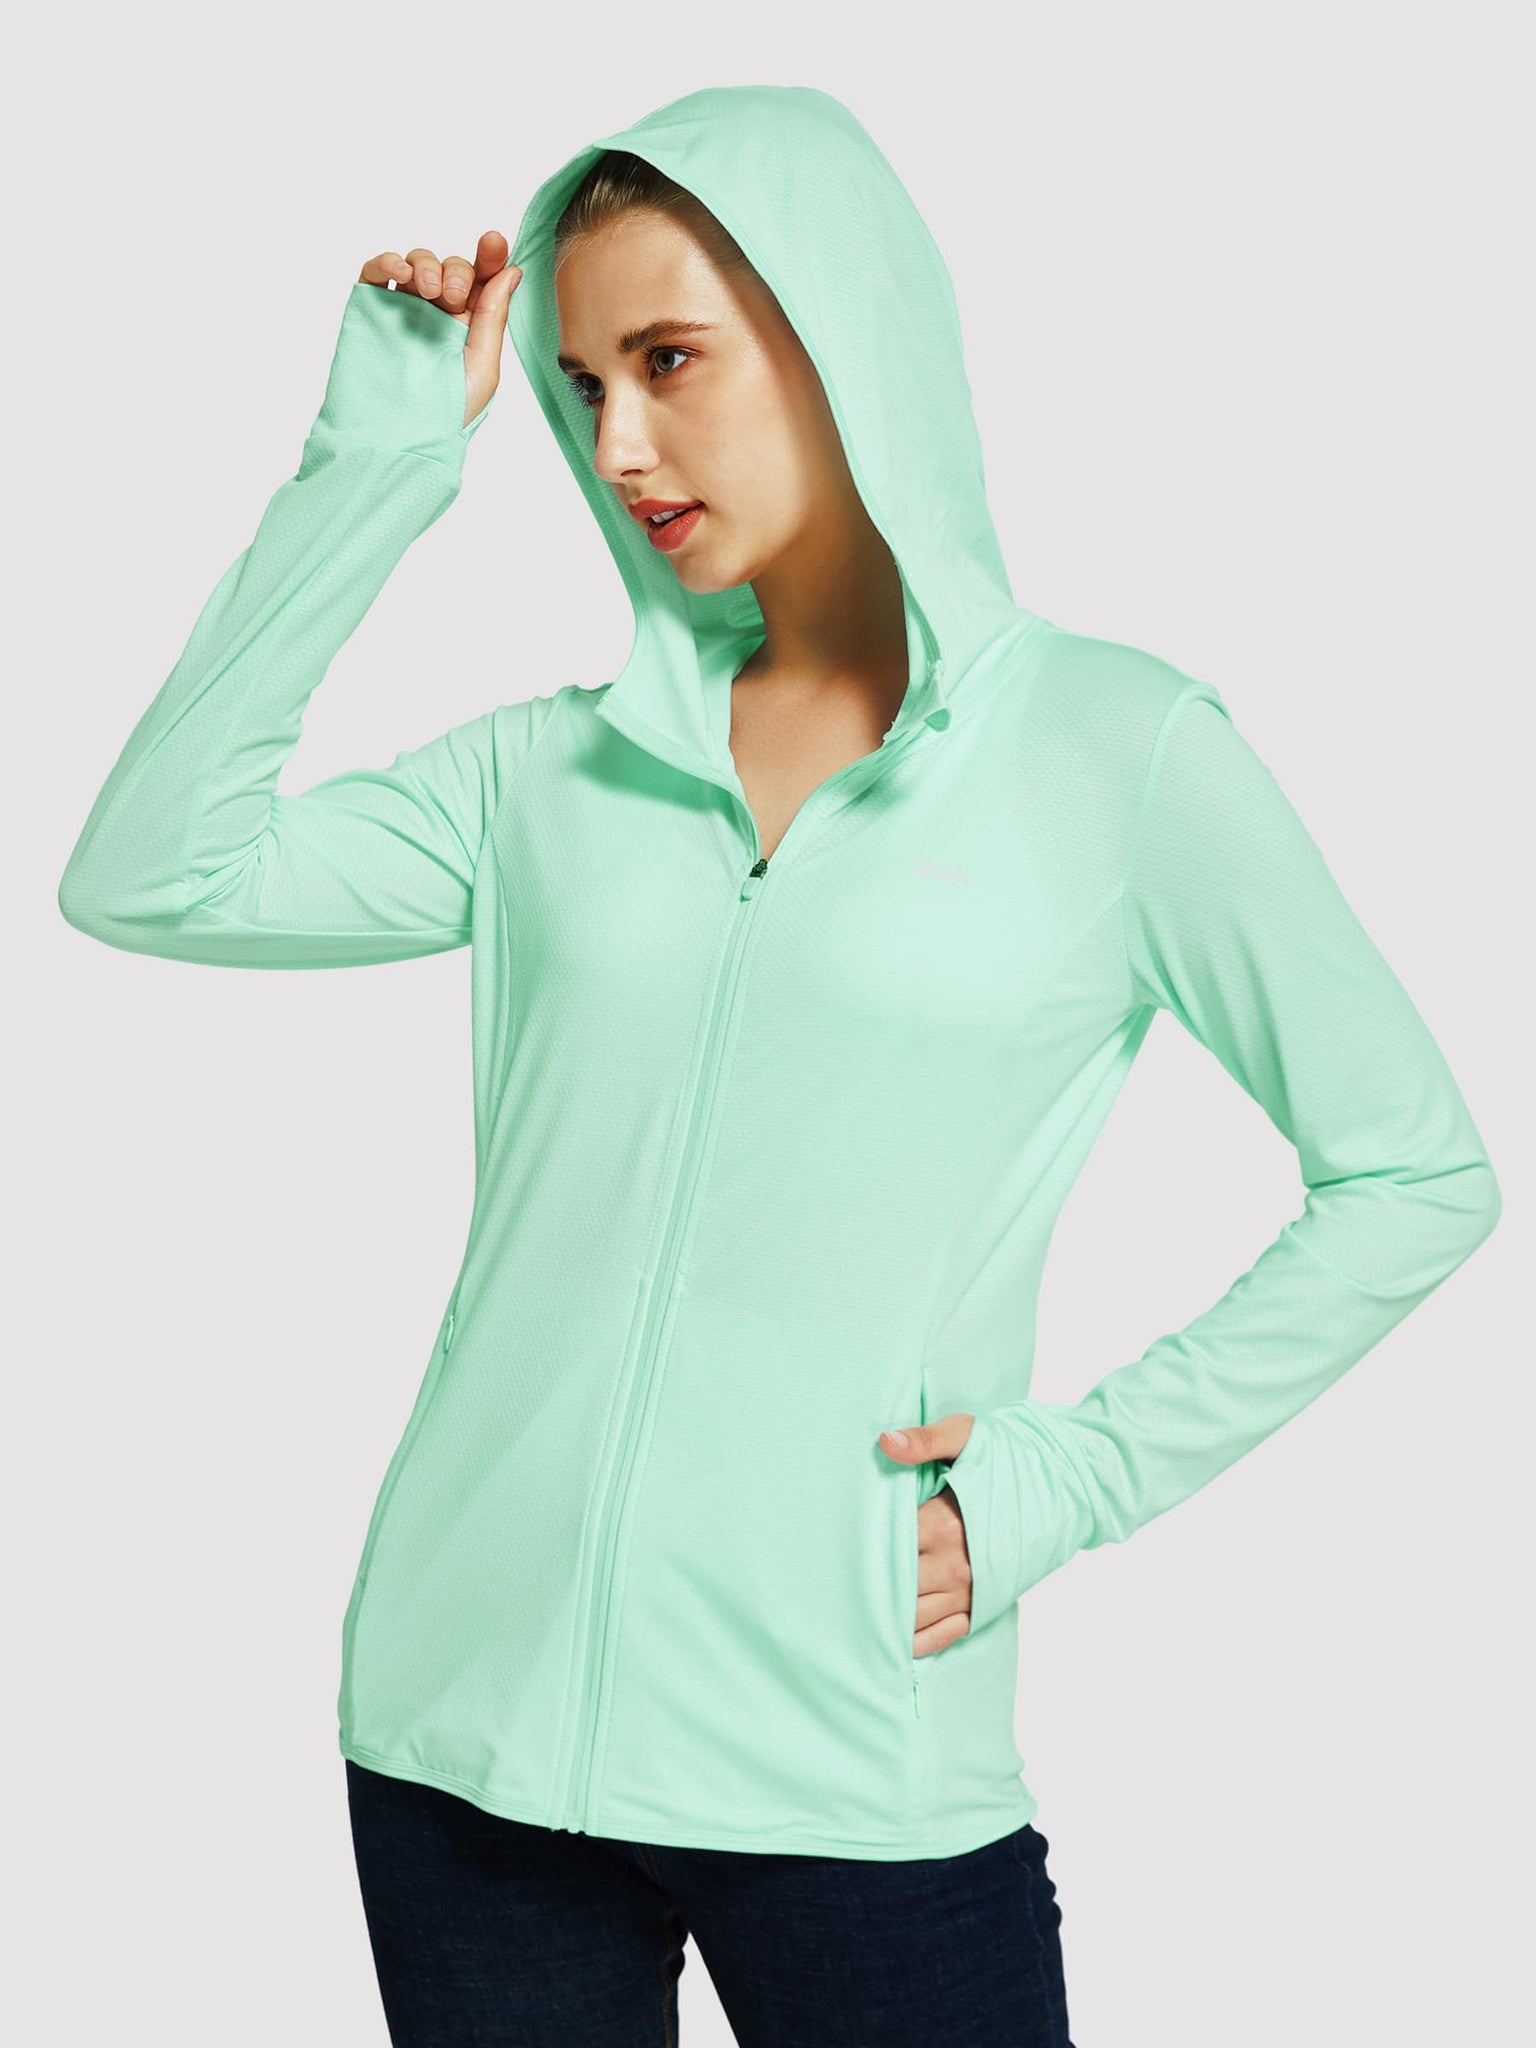 Willit Women's Outdoor Sun Protection Jacket Full Zip_Mint_model1